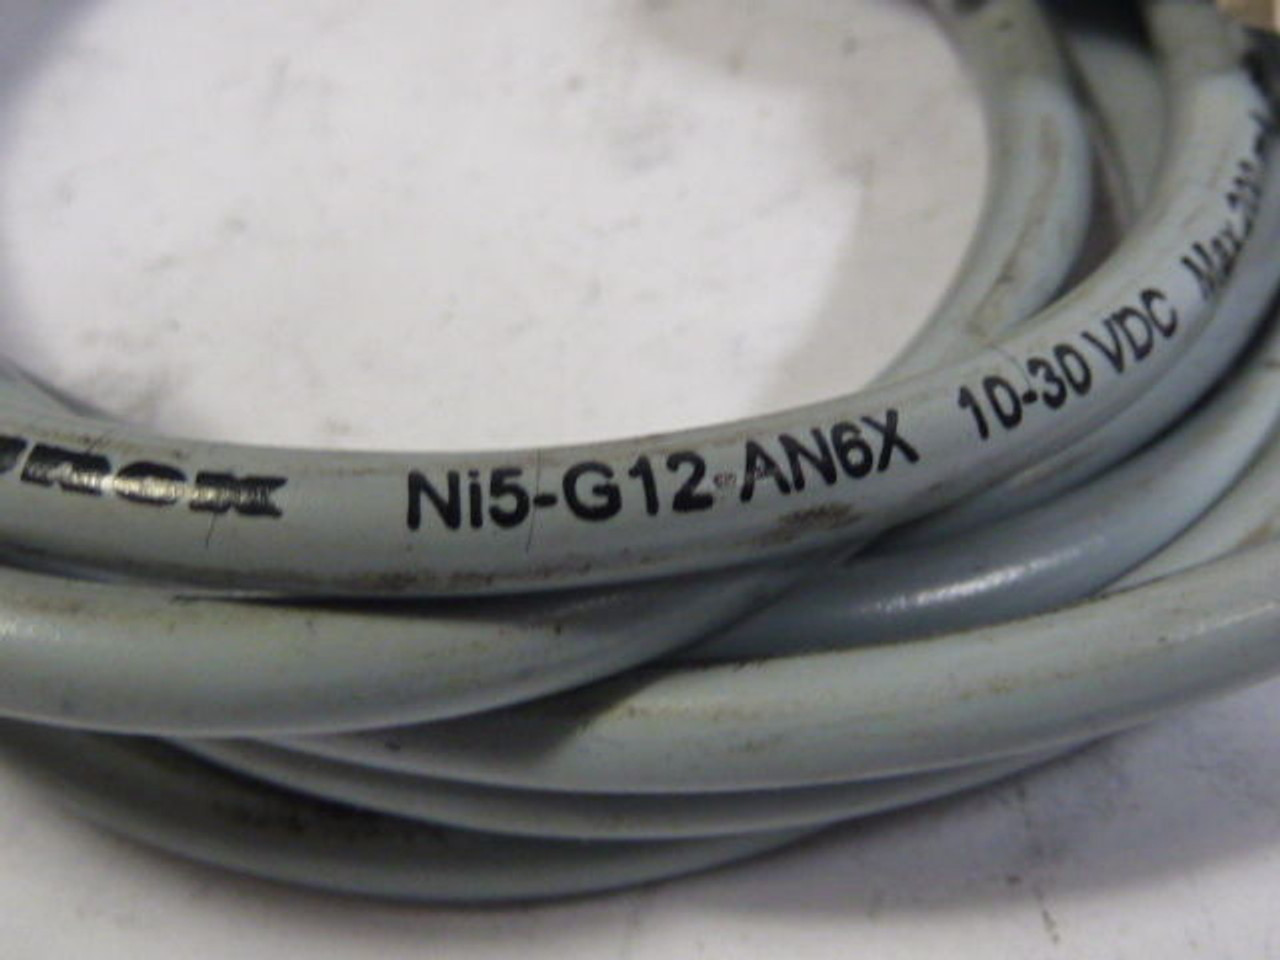 Turck NI5-G12-AN6X Proximity Switch USED